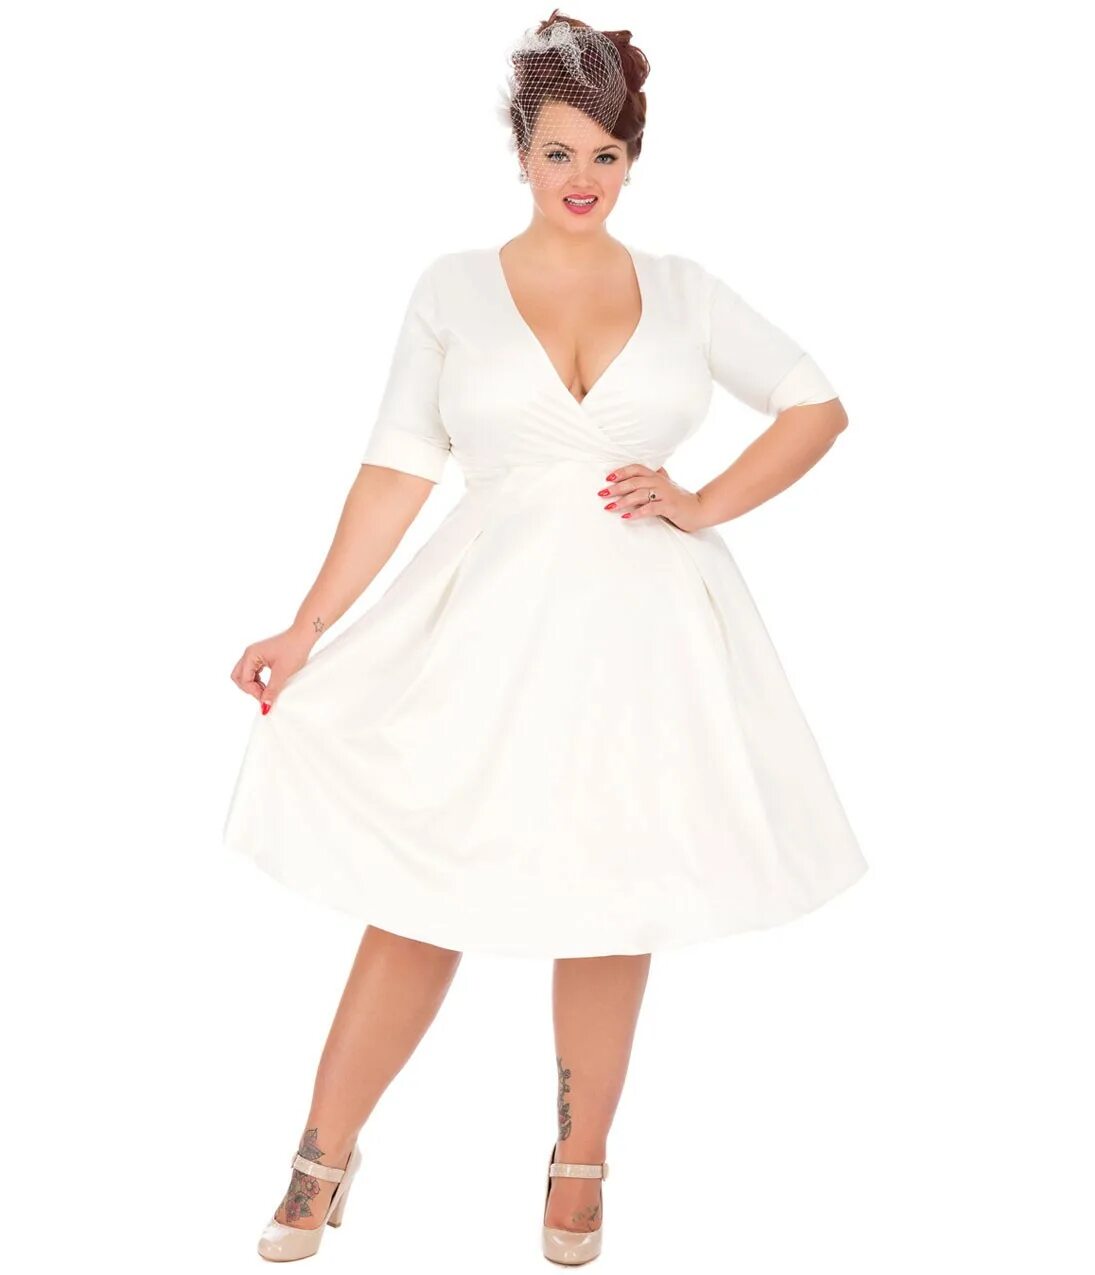 Толстухи белые. Свадебные платья плюс сайз 56-58 размер. Платье размер плюс сайз для 50 плюс. Свадебные платья плюс сайз короткие. Белое платье размер 50 плюс.